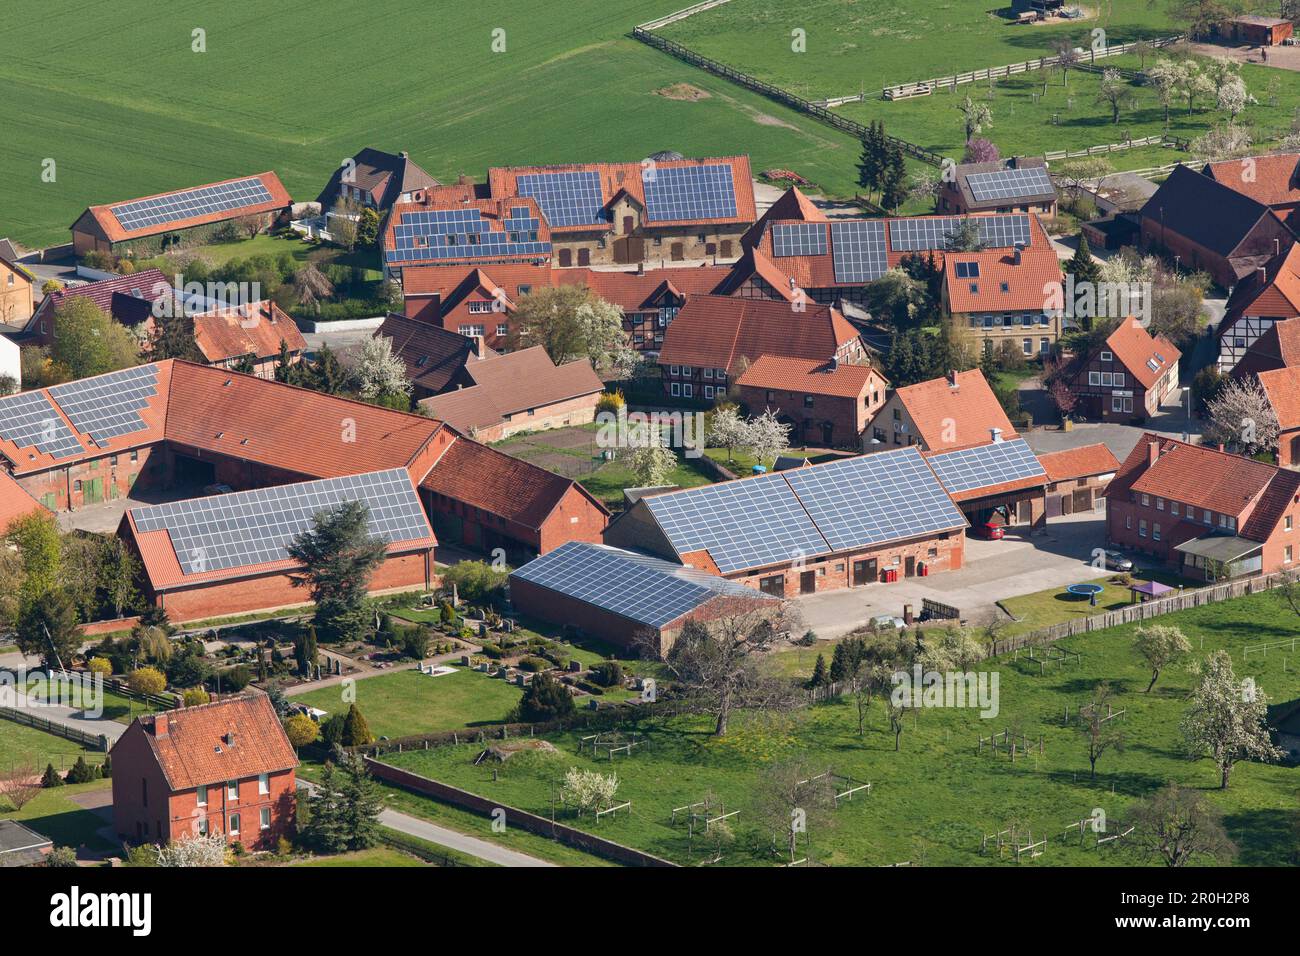 Vista aerea dei pannelli solari sui tetti del villaggio, energia alternativa, bassa Sassonia, Germania del Nord Foto Stock